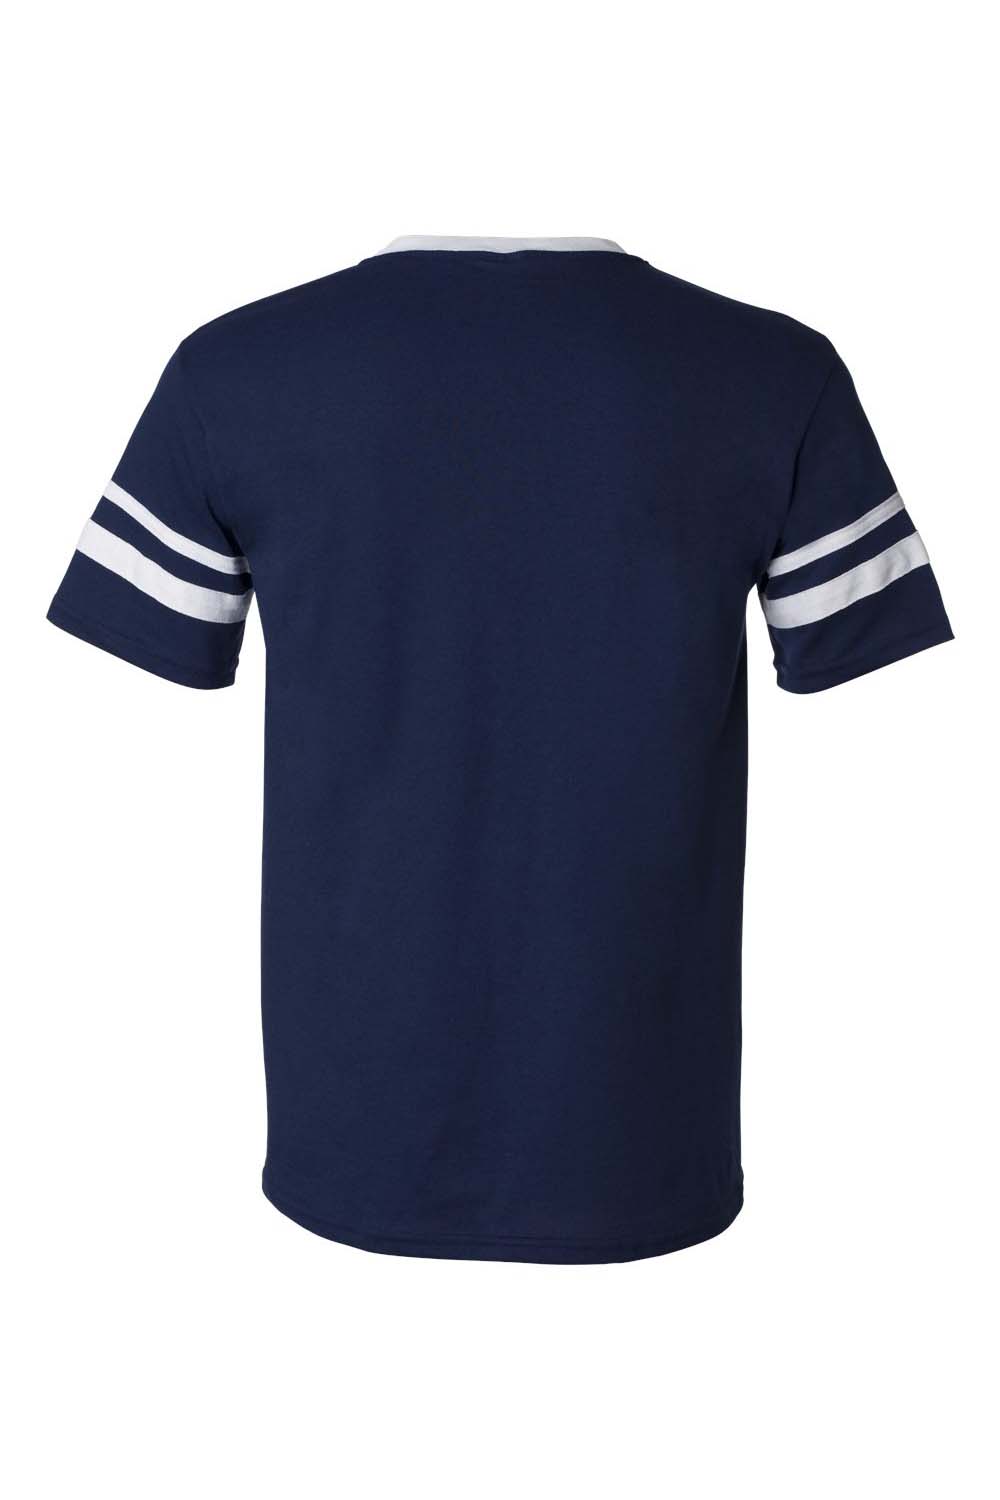 Augusta Sportswear 360 Mens Short Sleeve V-Neck T-Shirt Navy Blue/White Model Flat Back